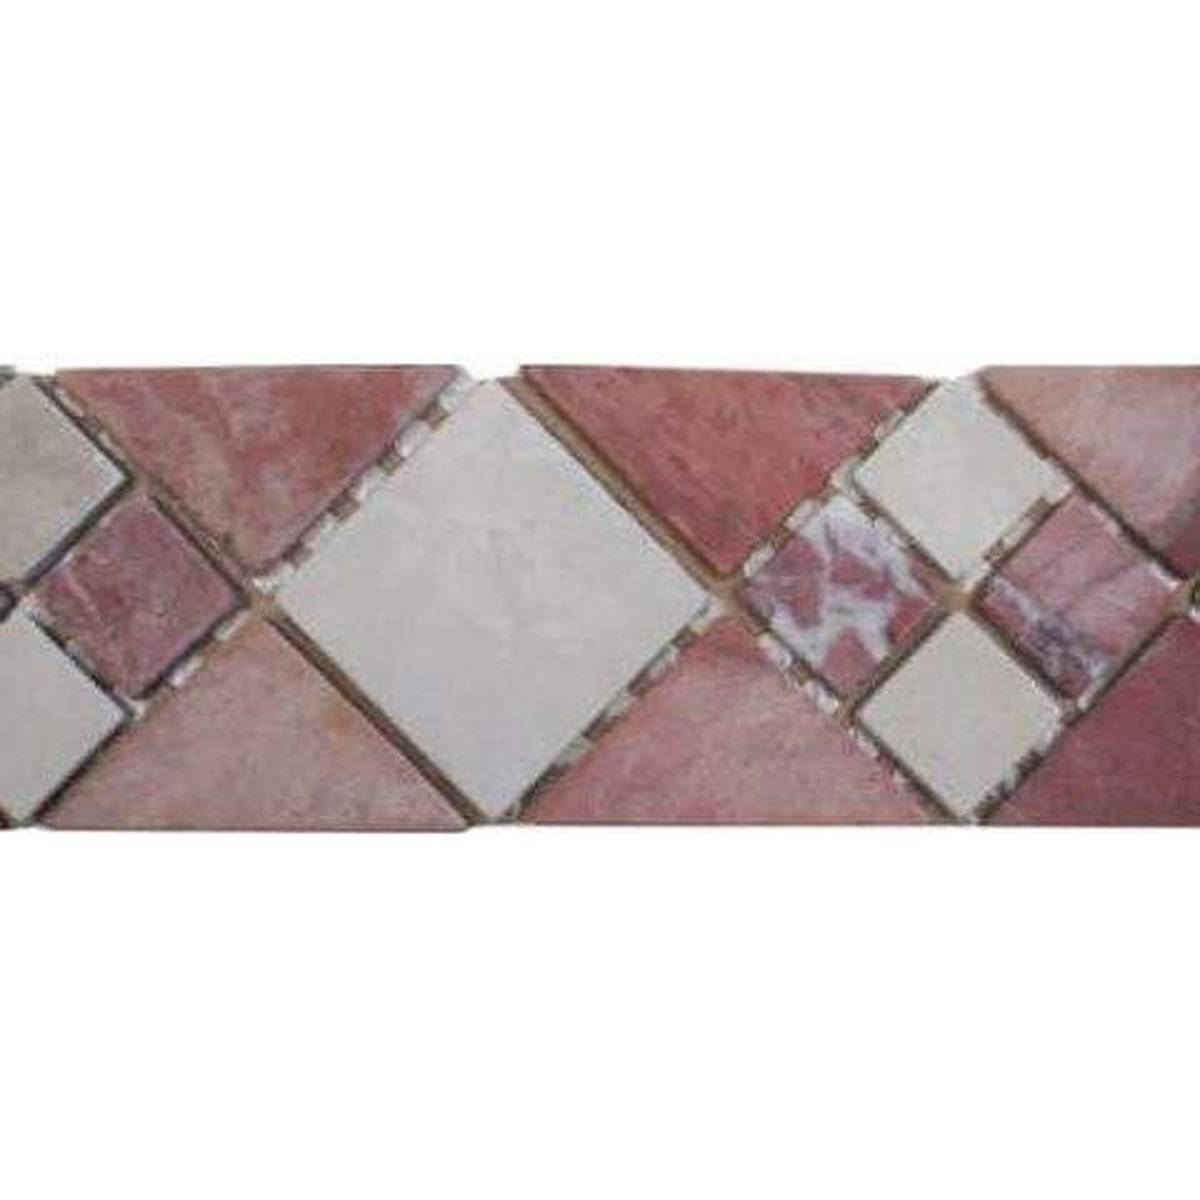 fascia mosaico ston marostica   pietra trattata su rete int est  pezzi